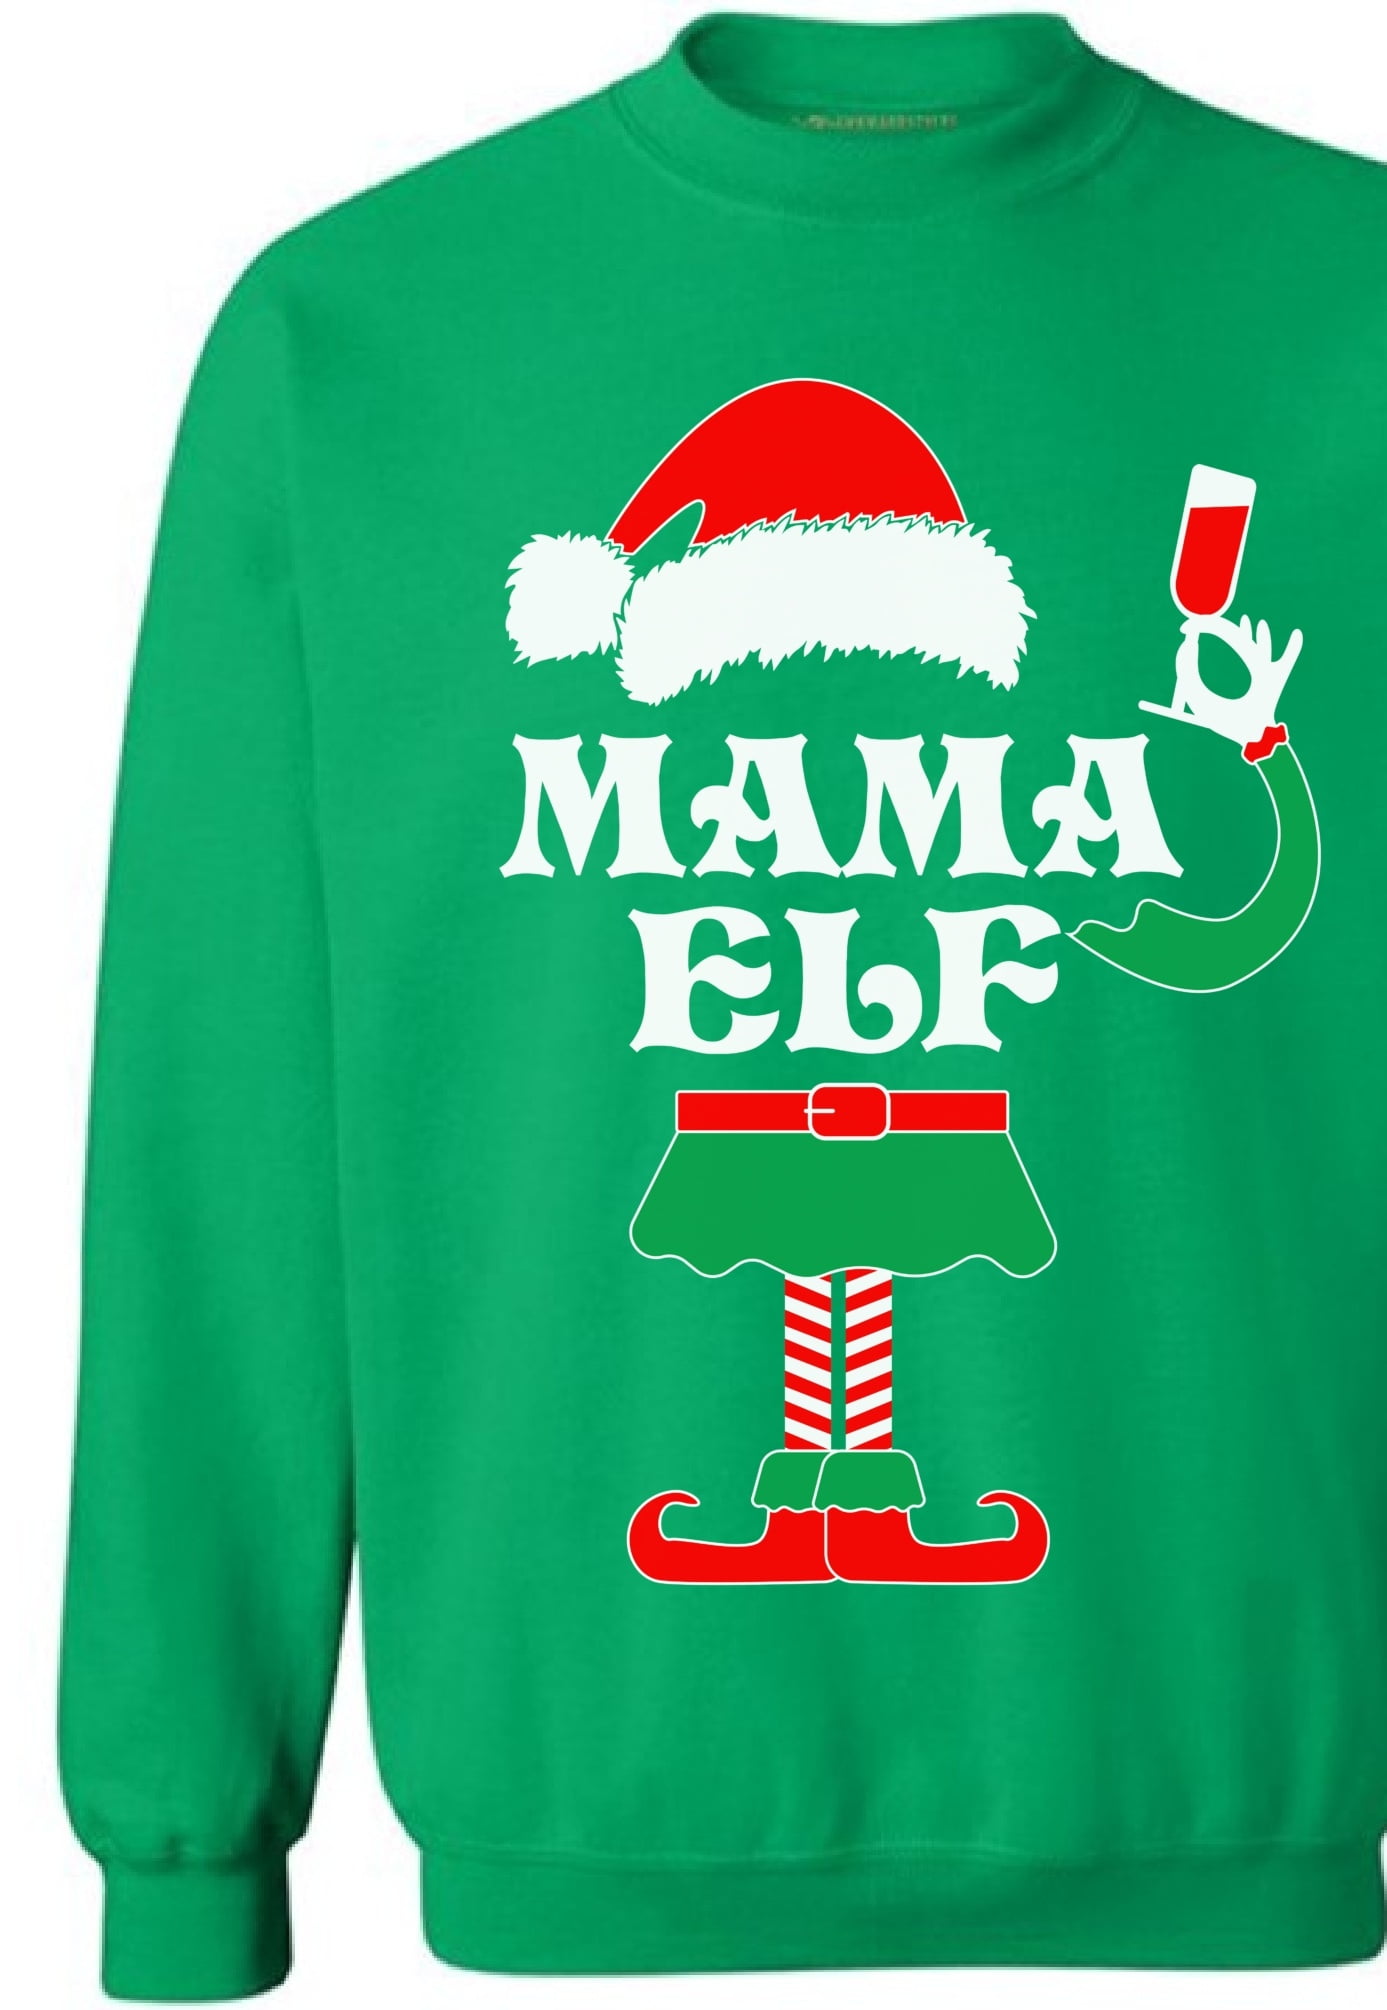 Xmas Sweater Women's Christmas Pajamas Christmas Sweater Womens Black Friday Sale Mama Claus Christmas Sweatshirt Ugly Christmas Jumper